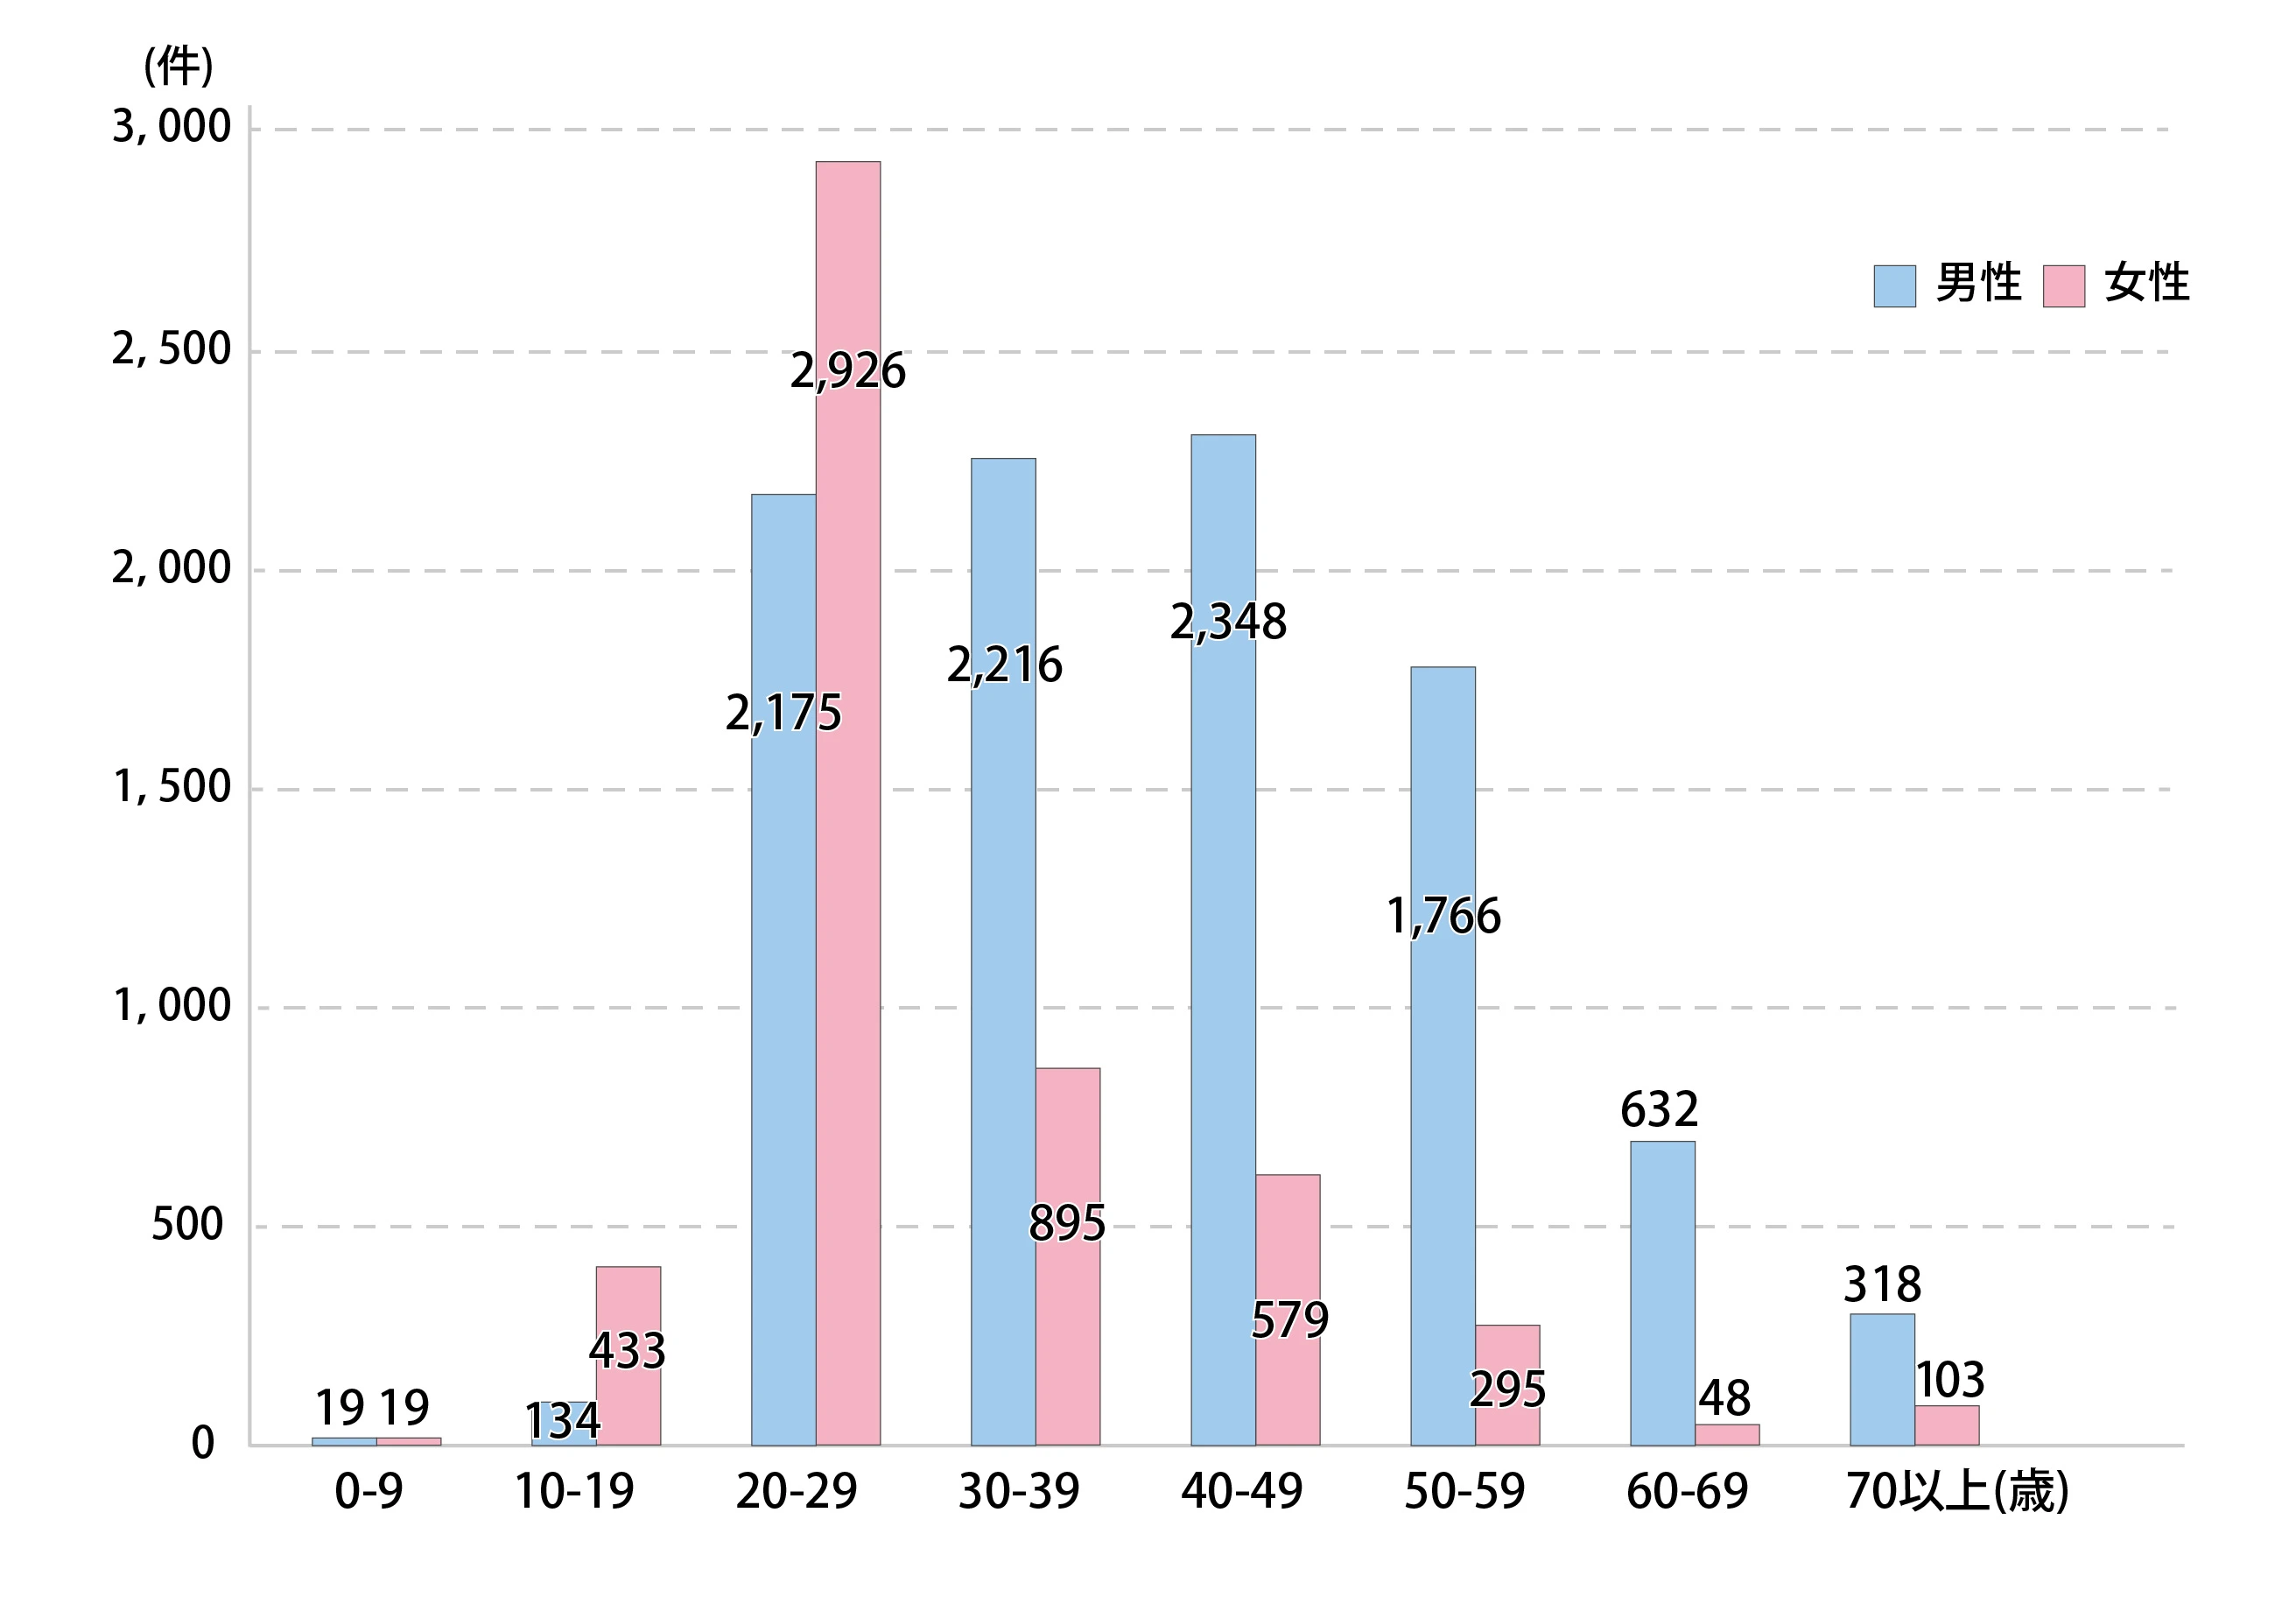 年代別にみた梅毒報告数のグラフ。男性は20代(2,175件）、30代(2,216件）、40 代(2,348件）、50代(1,766件）と20代から50代までが、女性は20代が2.926件と突出して報告数が多い。